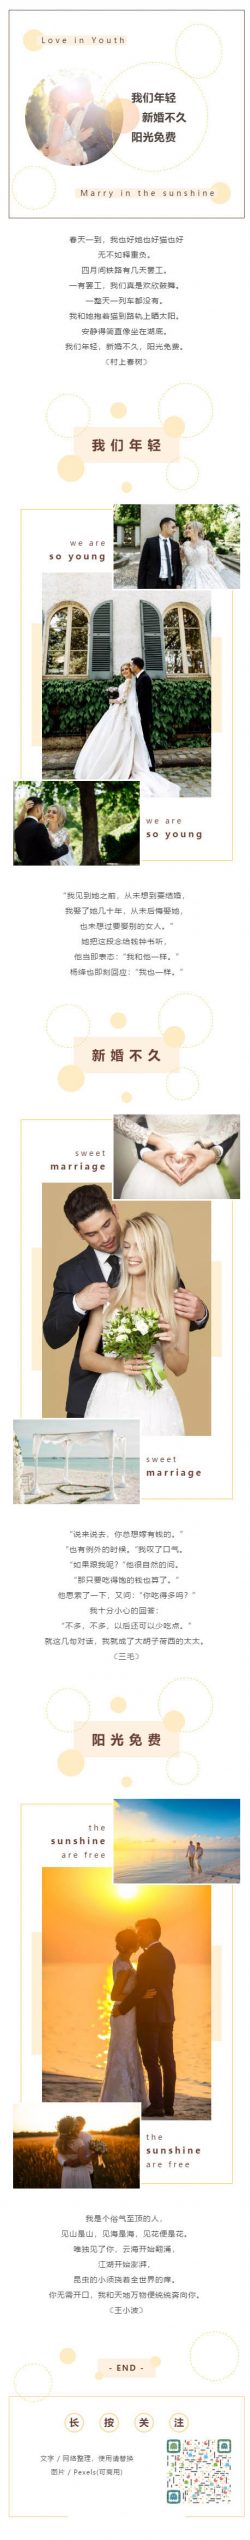 新婚婚纱婚礼微信图文模板推送推文素材